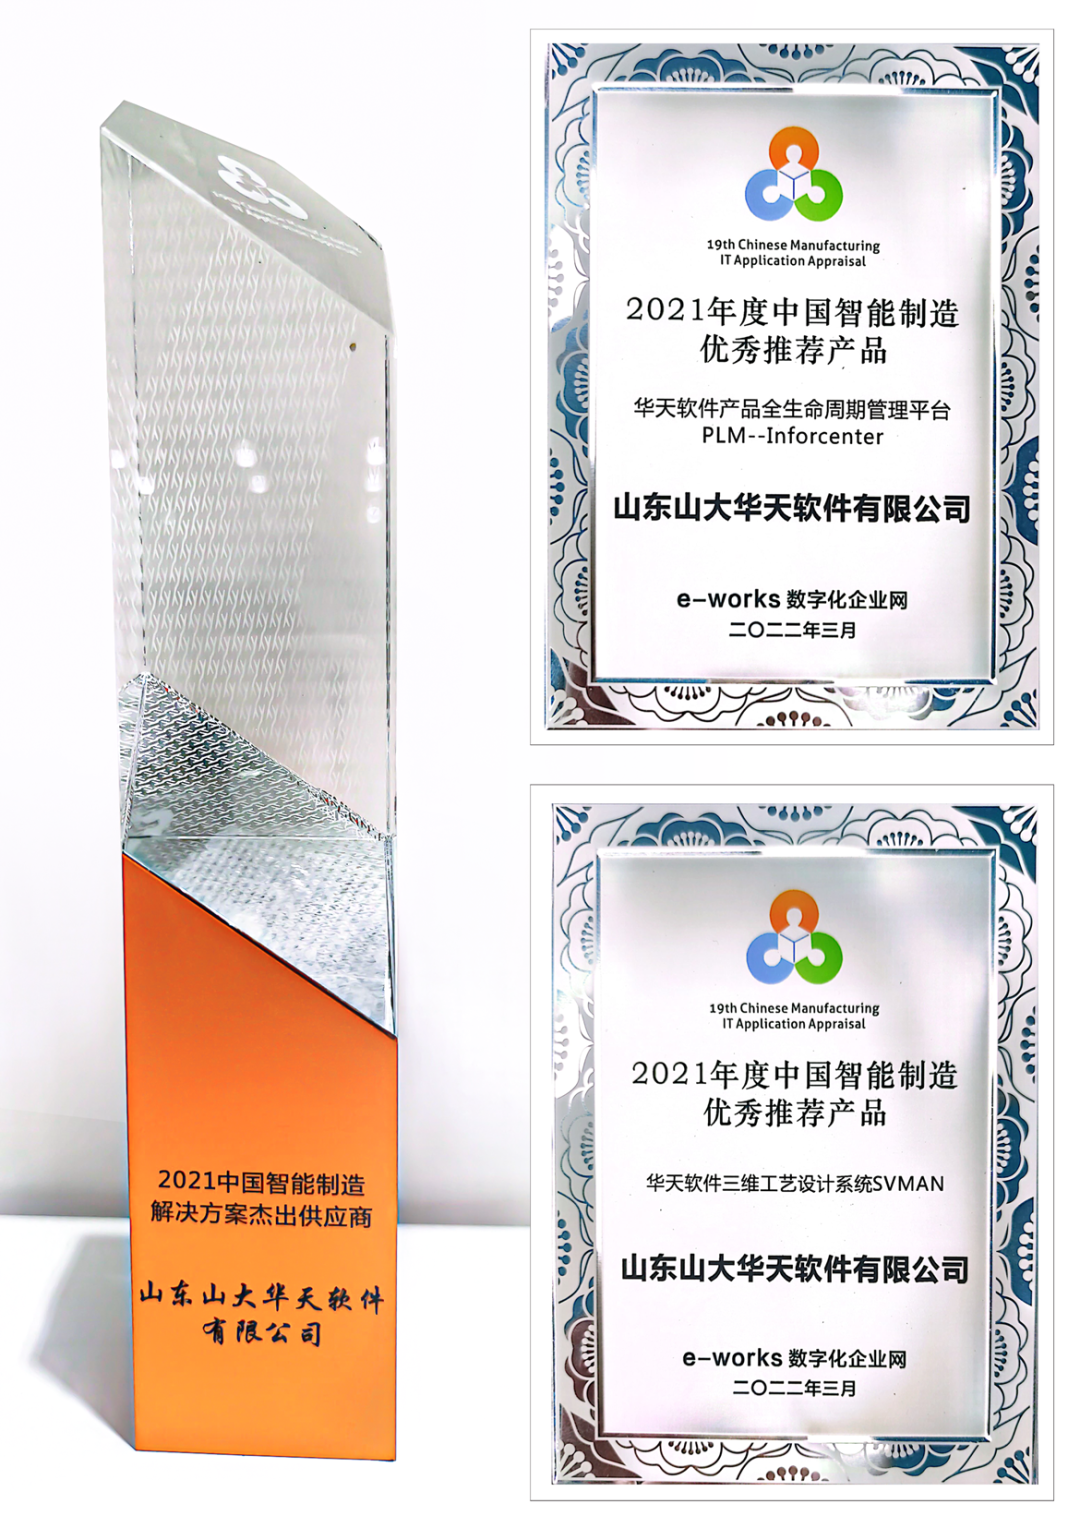 华天软件受邀参加“第十一届中国智能制造高峰论坛”并摘得多项大奖！